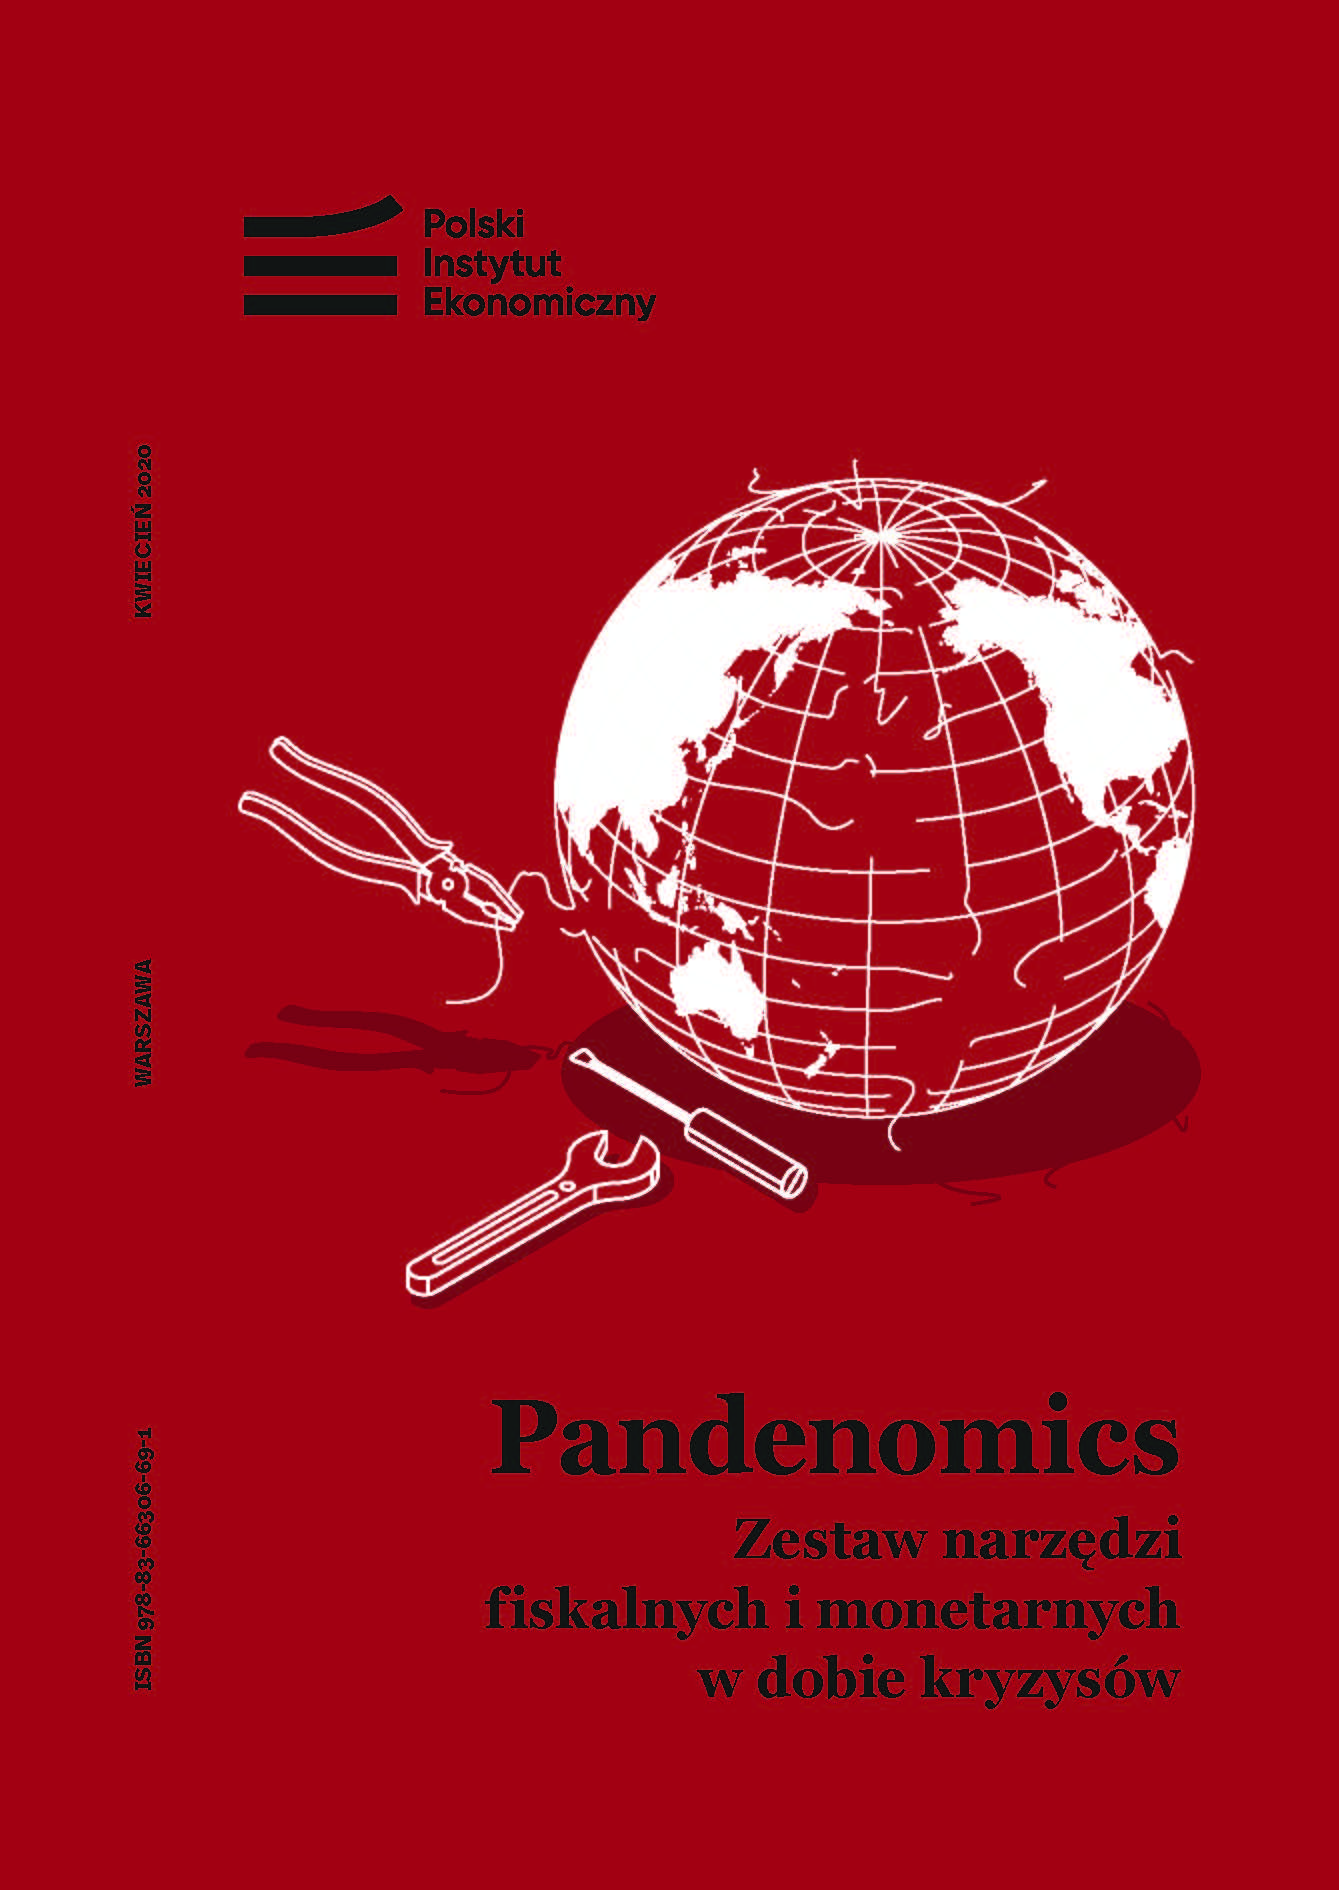 Pandemia koronawirusa mobilizuje rządy do działania silniej niż globalny kryzys finansowy sprzed dekady